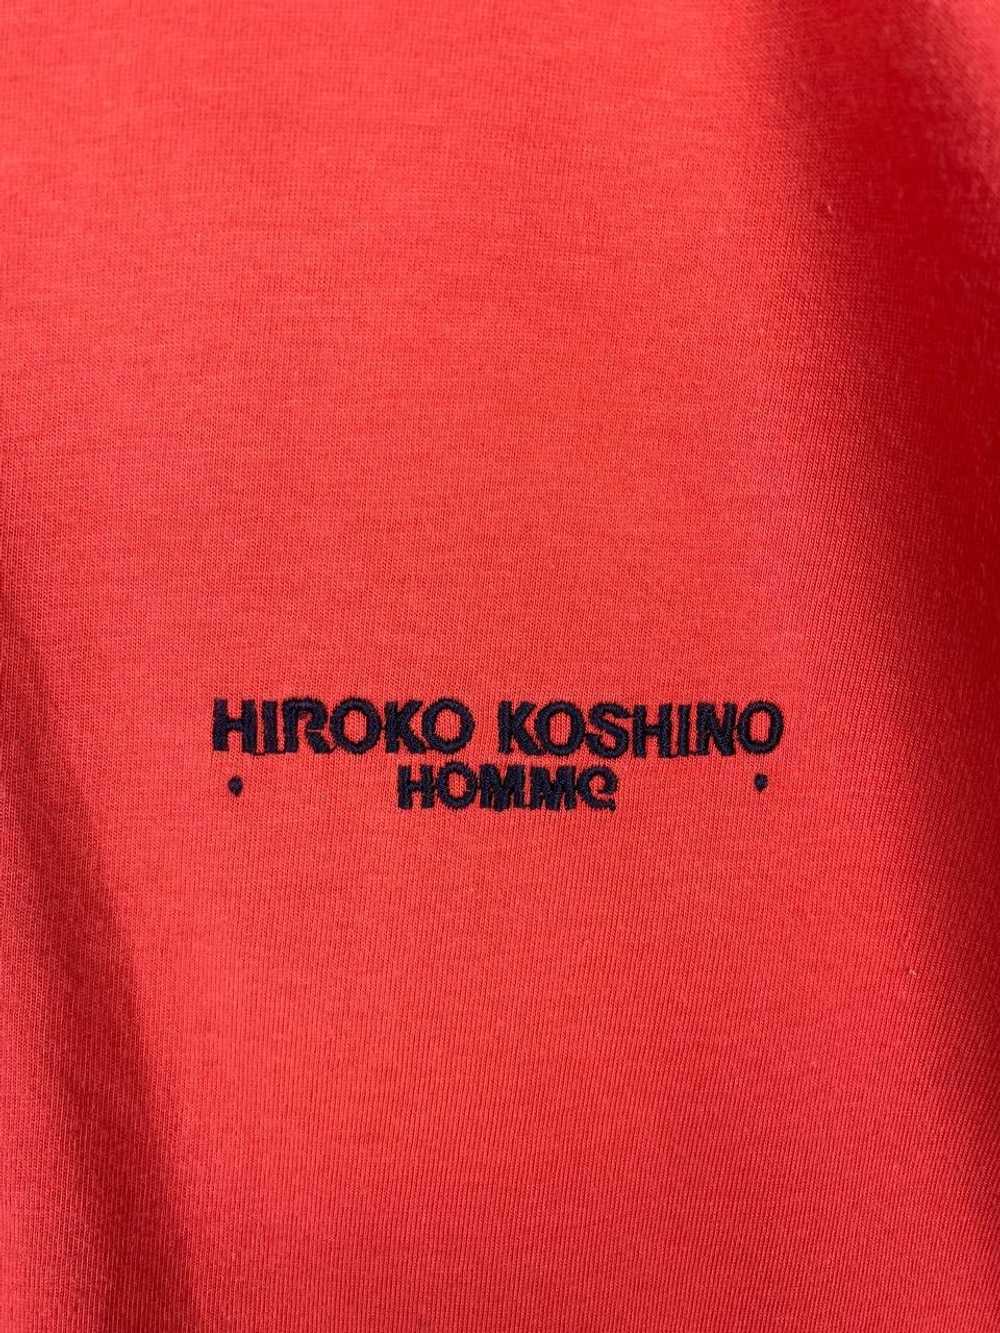 Avant Garde × Hiroko Koshino Homme × Japanese Bra… - image 3